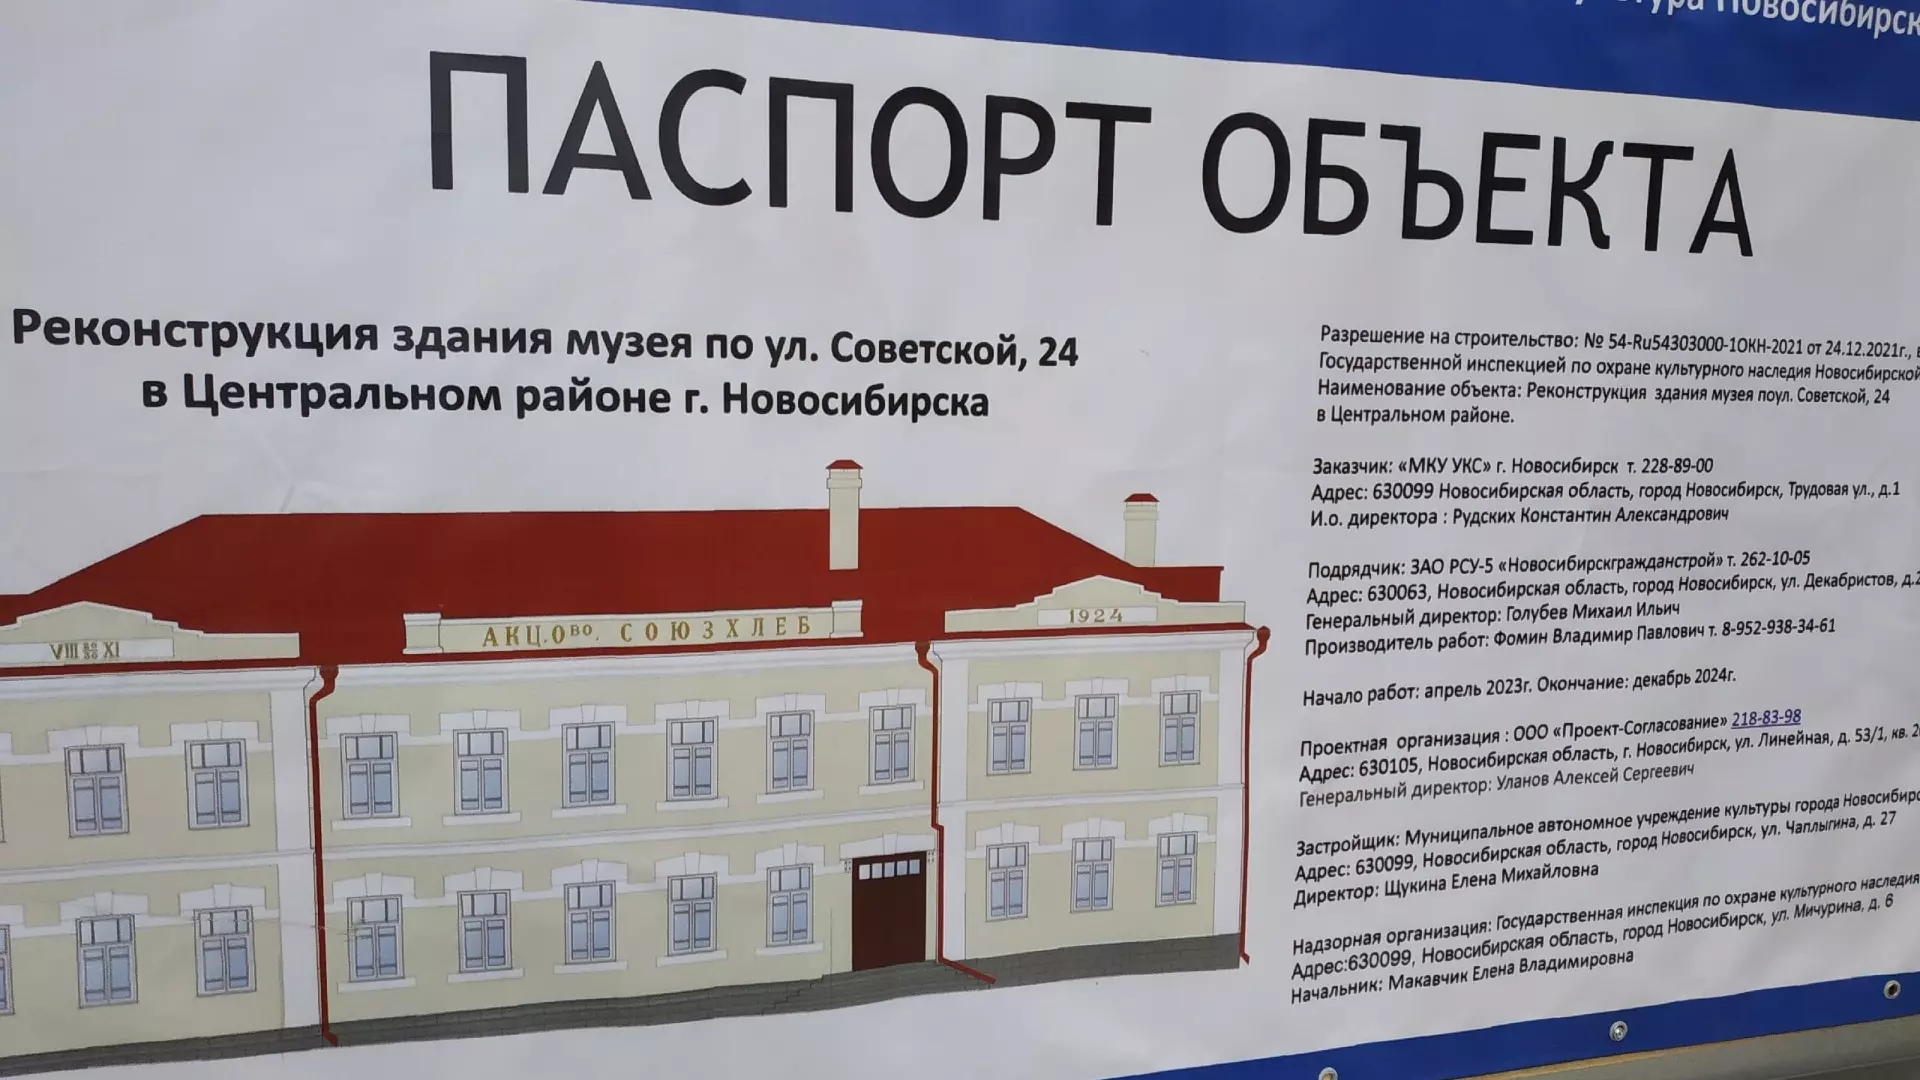 На выполнения комплекса работ выделили 28,5 млн рублей. Источники финансирования — бюджеты города, субсидии из областного и федерального бюджетов